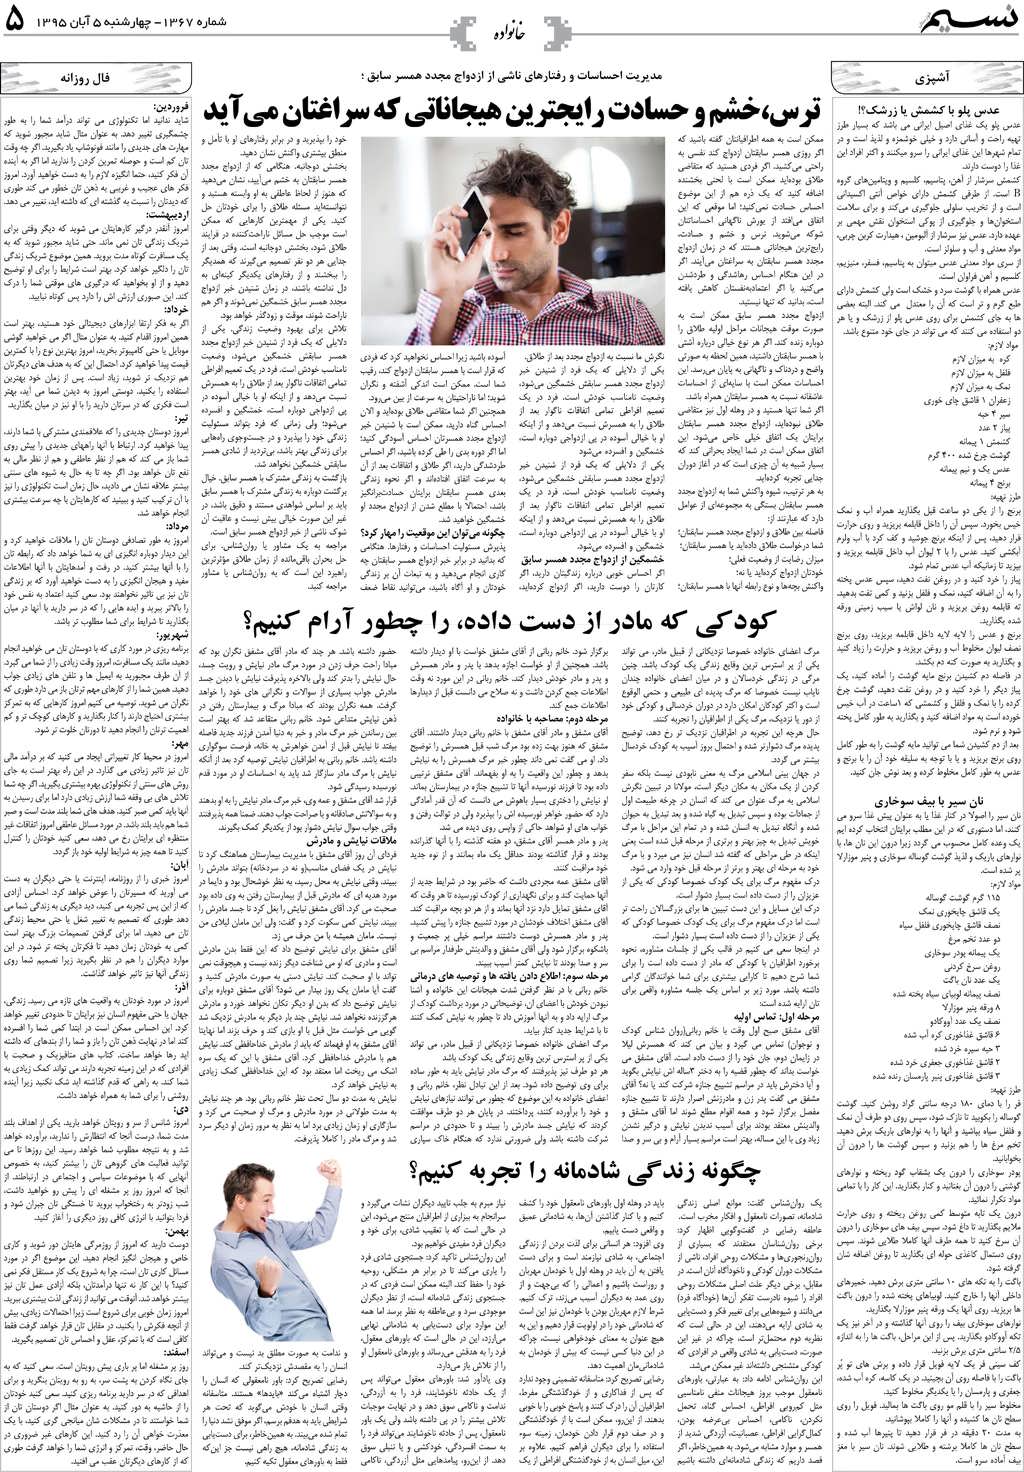 صفحه خانواده روزنامه نسیم شماره 1367